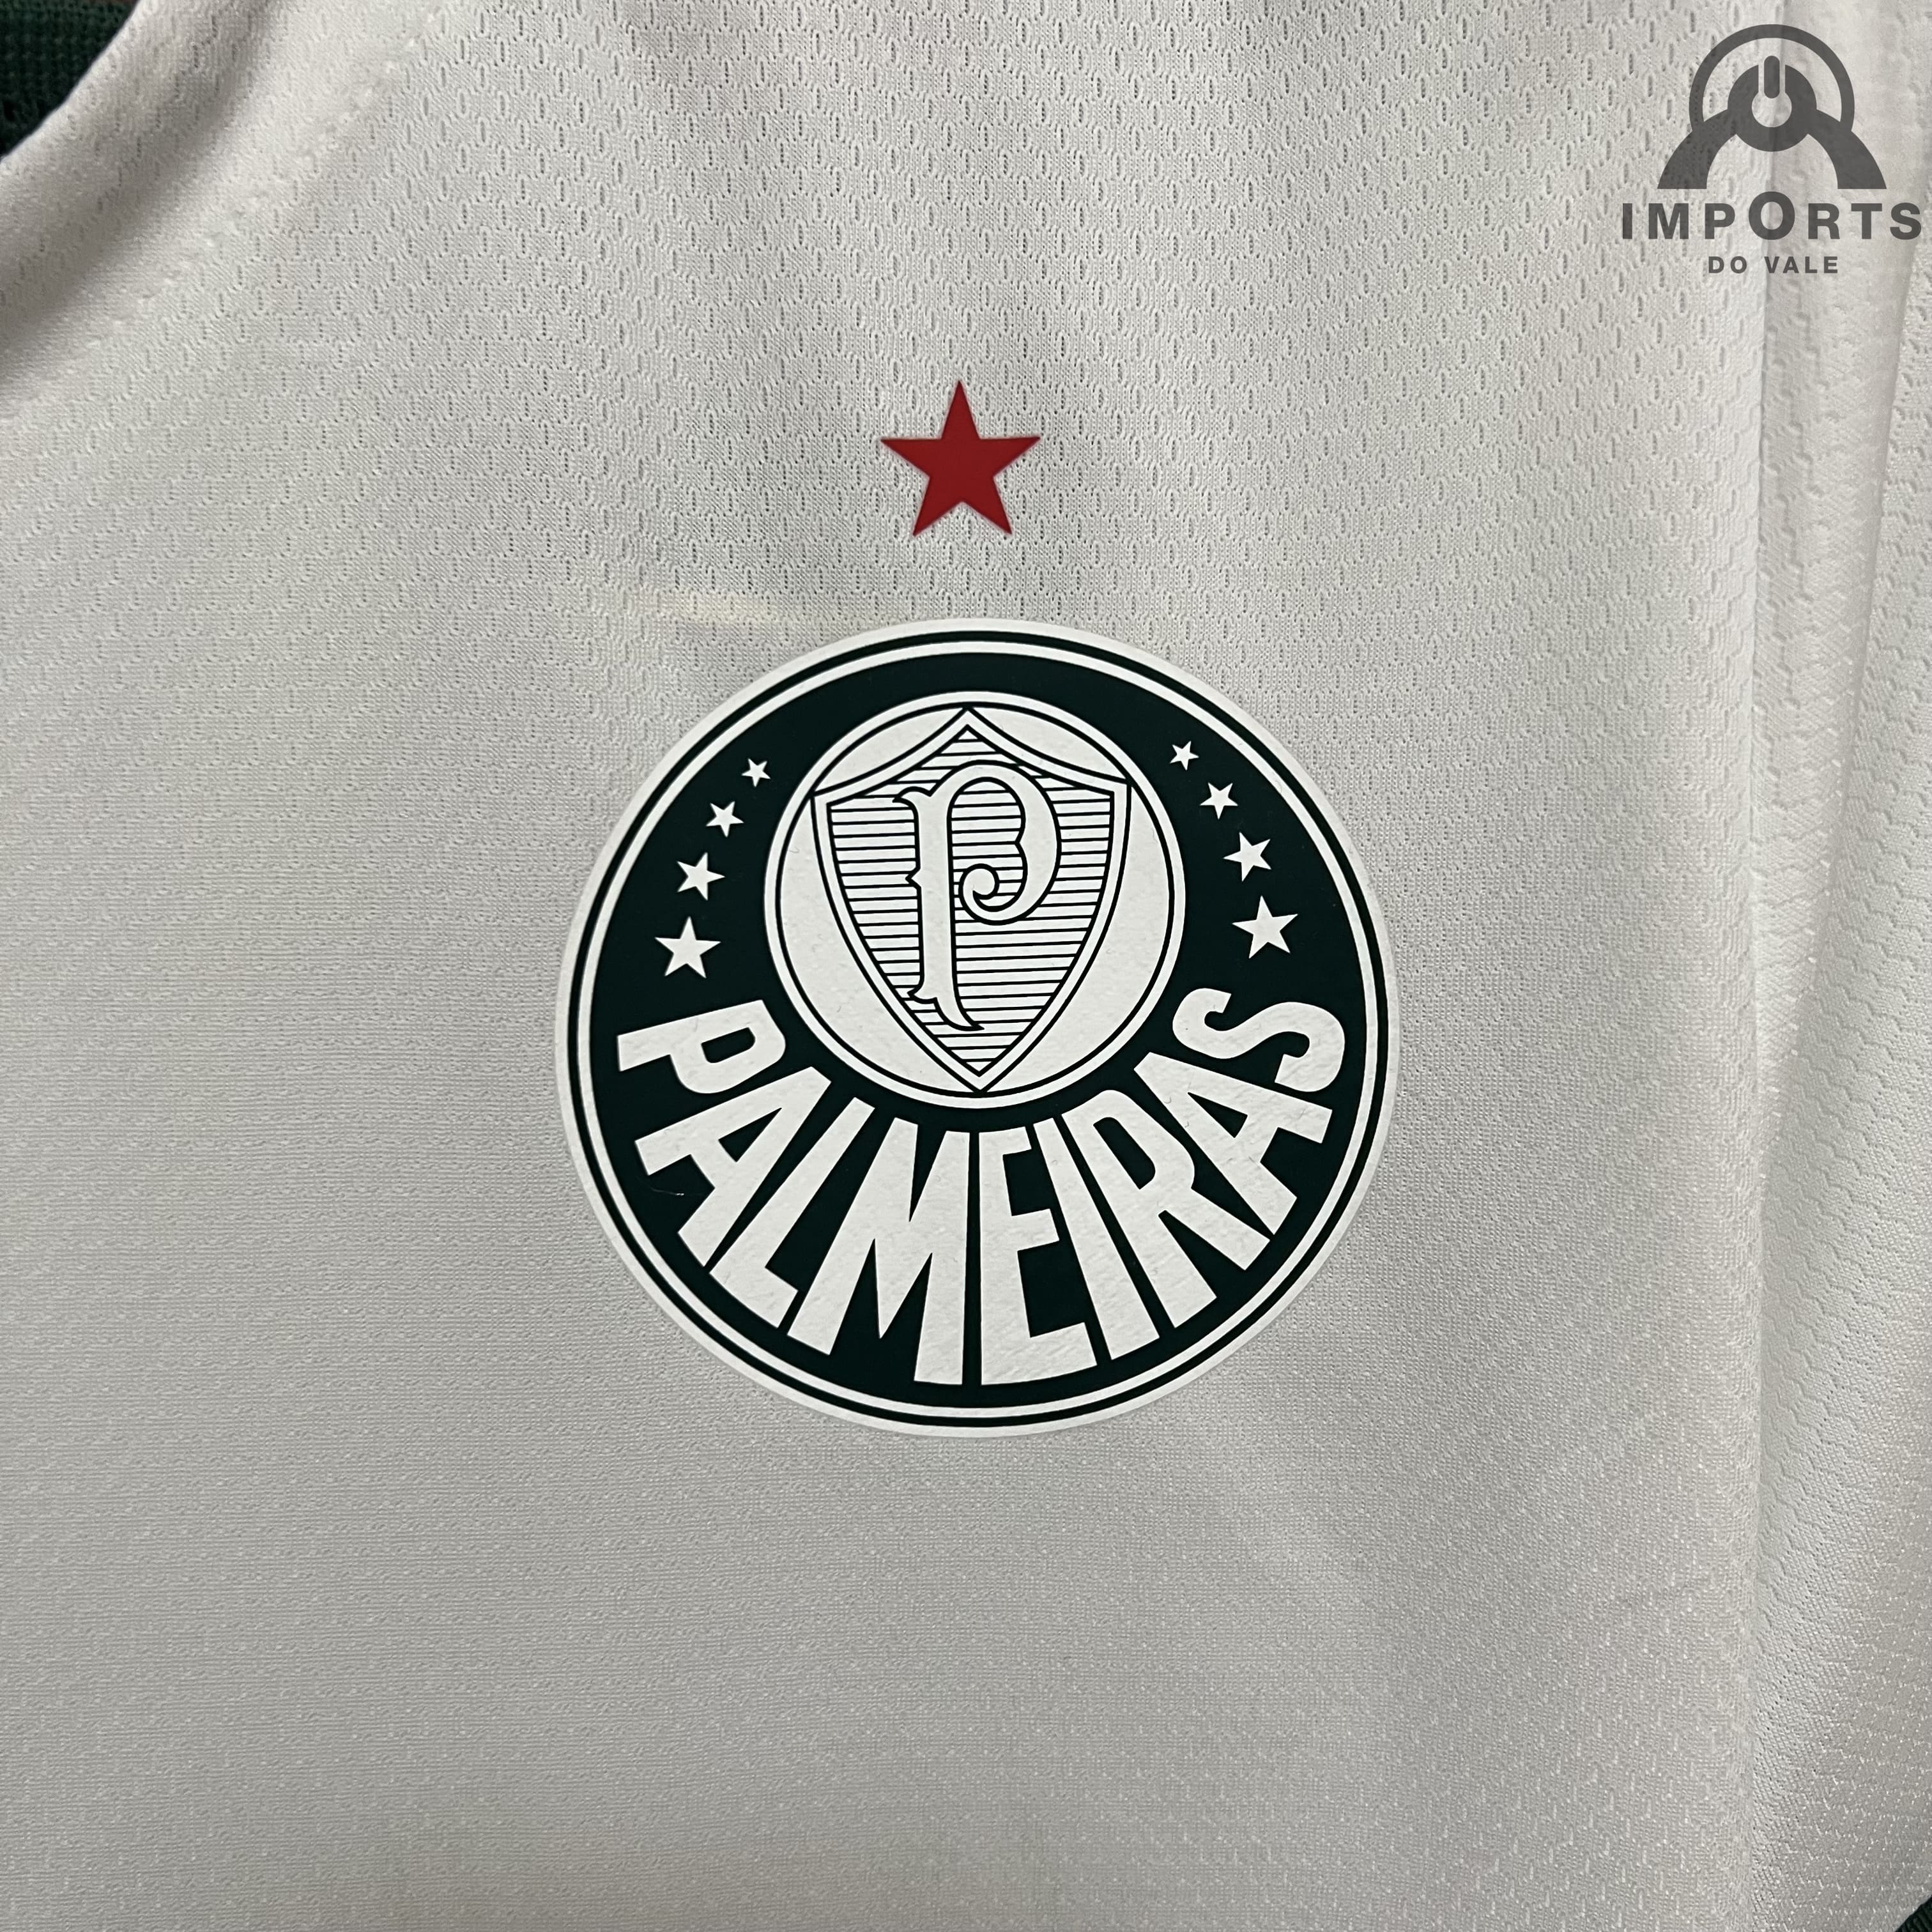 Camisa Palmeiras II 21/22 Versão Torcedor Libertadores + Personalização  Grátis - Imports do vale